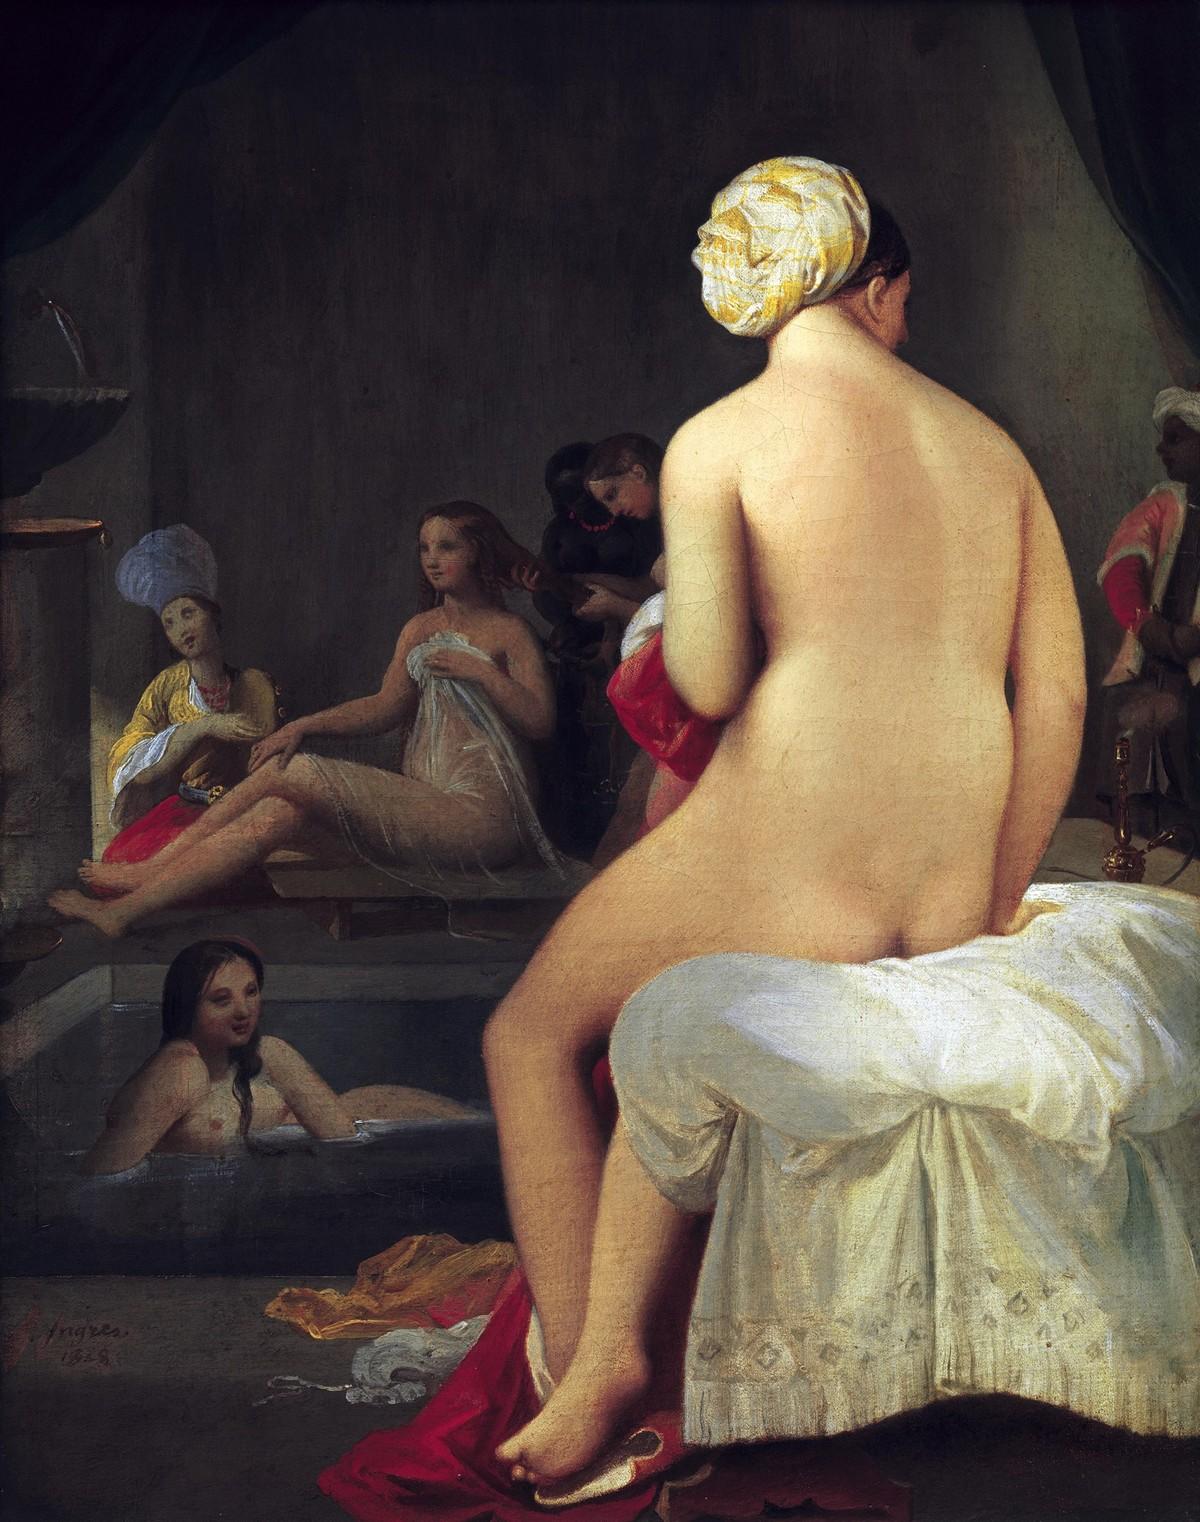 Ingres, La Petite Baigneuse, 1828, huile sur toile, 35 x 27 cm (musée du Louvre, Paris).